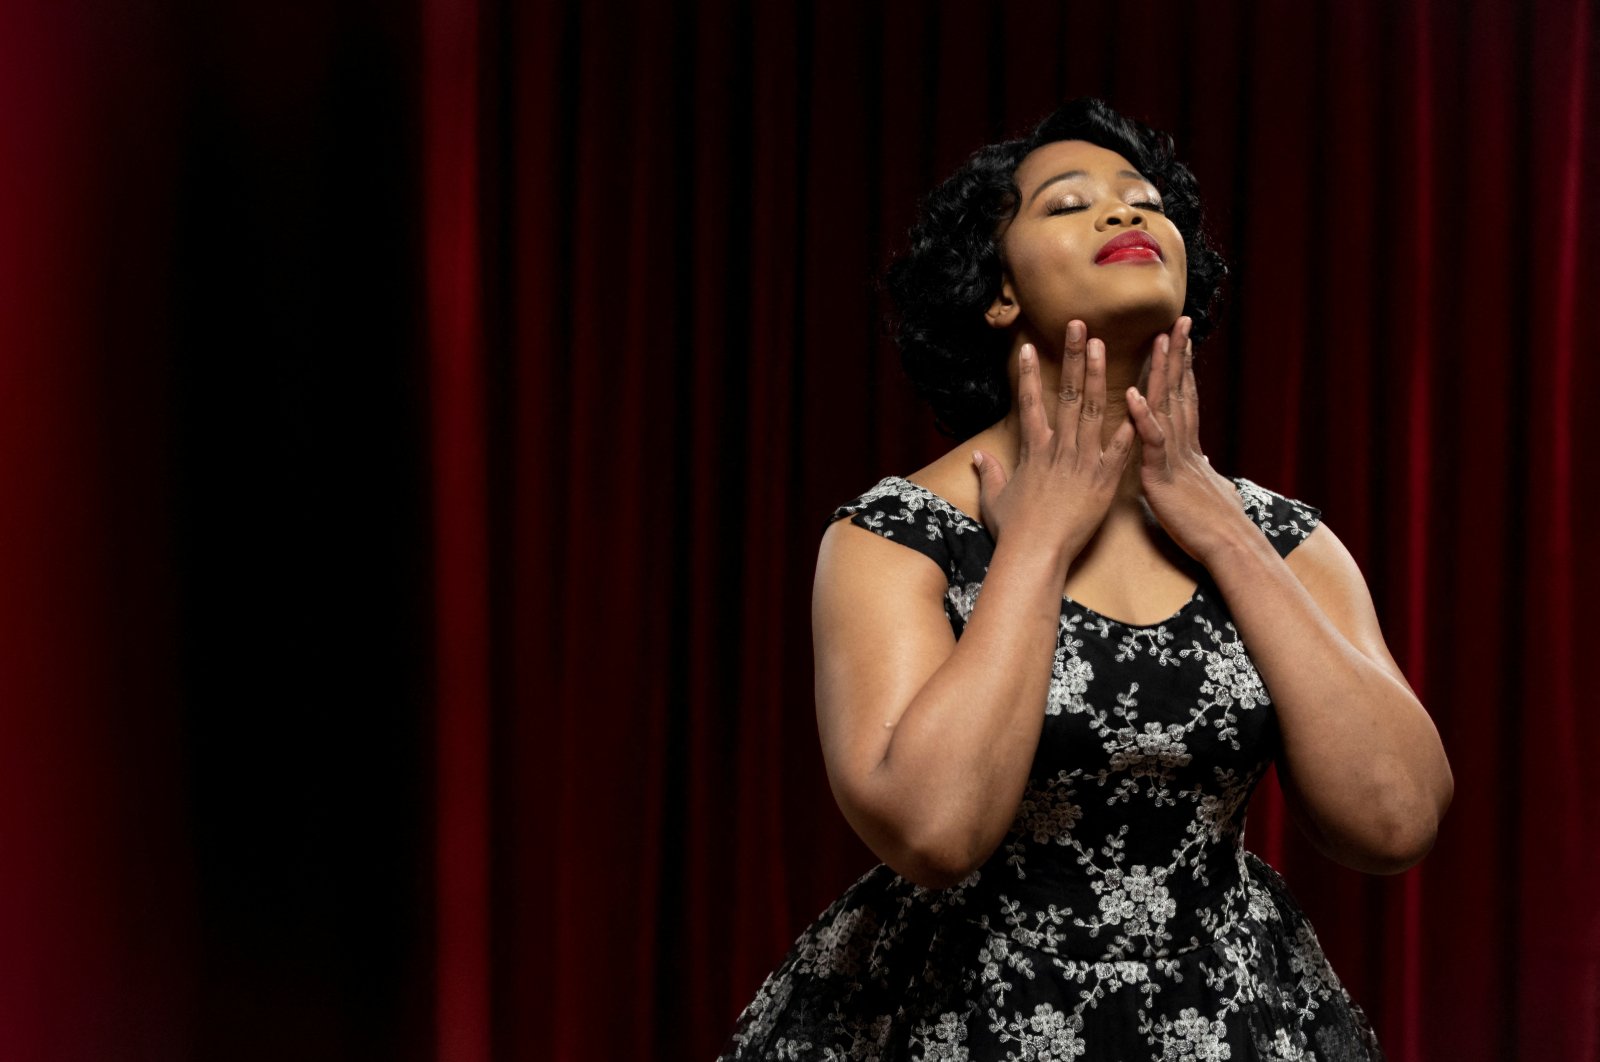 Kecemasan penobatan: Penyanyi opera Yende bersemangat untuk tampil